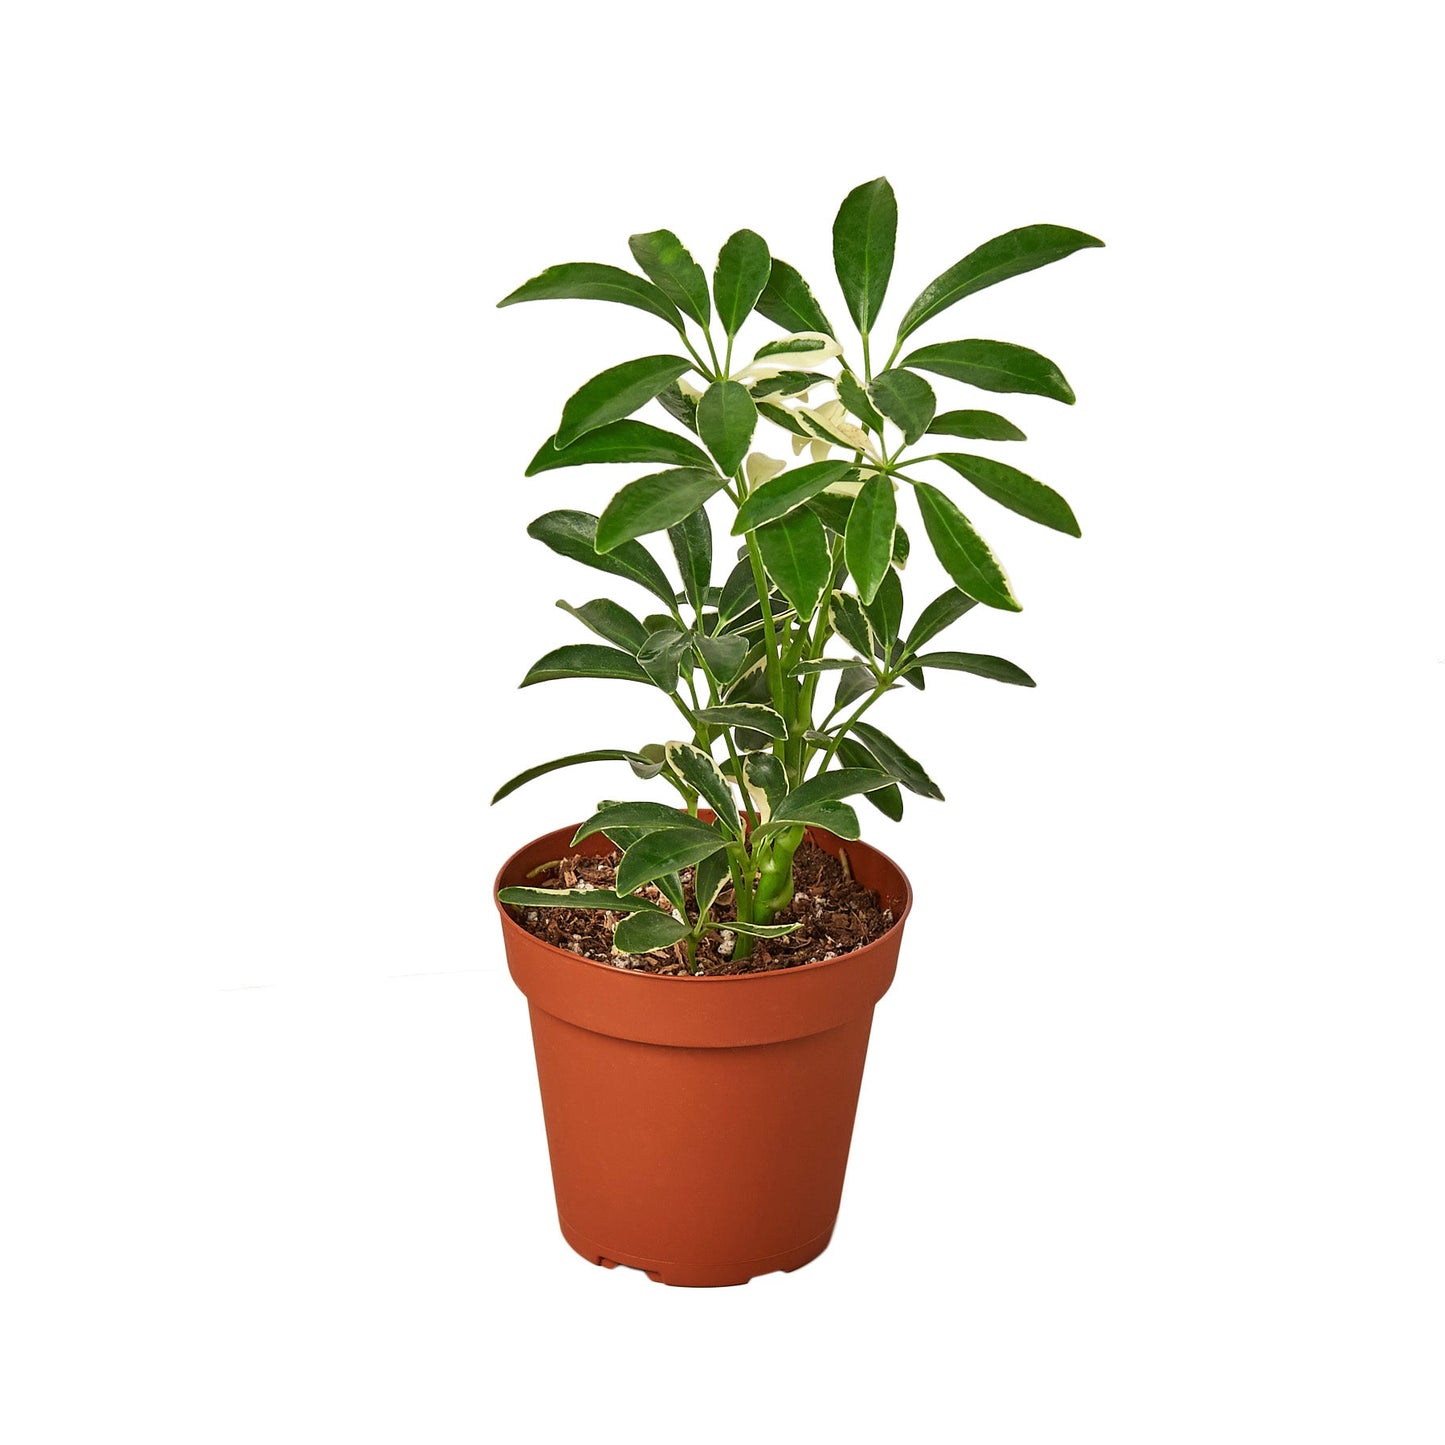 2 Different Schefflera Plants Variety Pack - 4" Pot